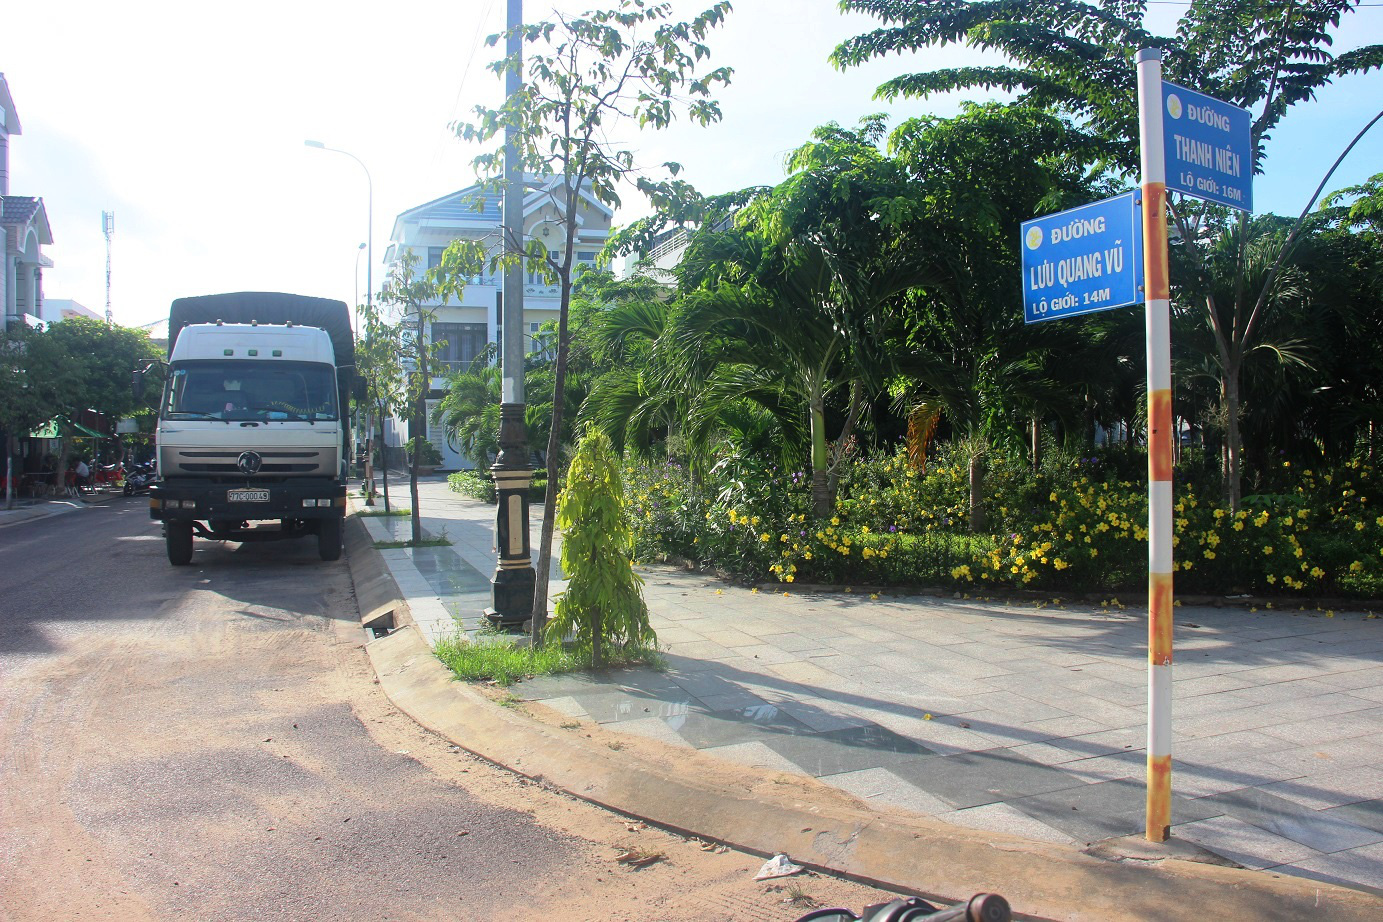 Hà Nội sẽ có tên đường Lưu Quang Vũ – Xuân Quỳnh ở quận Cầu Giấy - Ảnh 2.